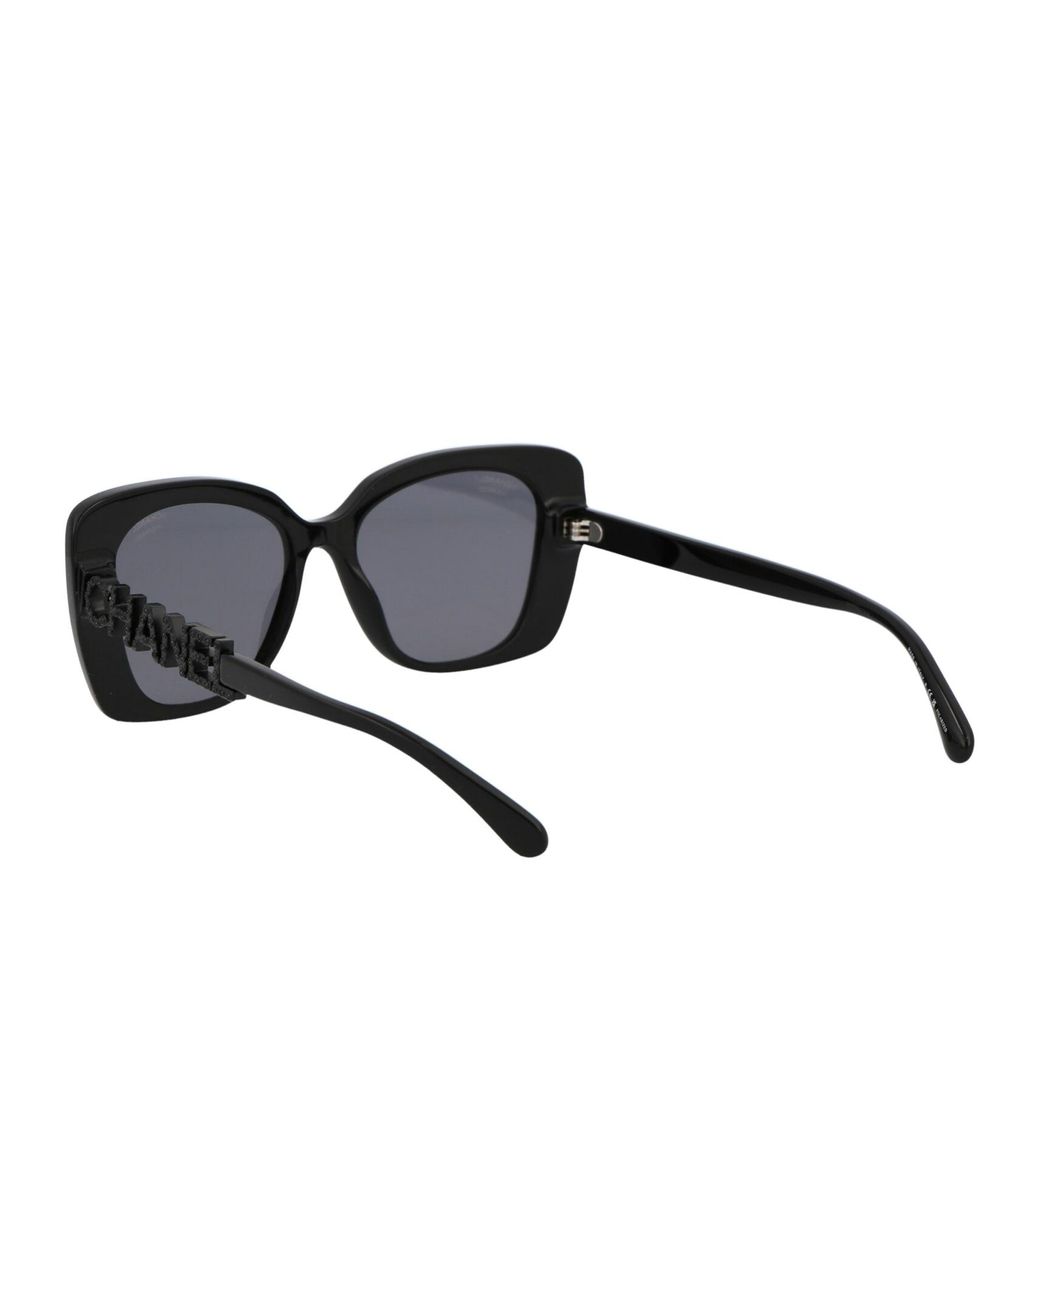 New Brand Women Big Sunglasses | 2020 Brand Women Sunglasses | Chanel  Sunglasses Large - Sunglasses - Aliexpress